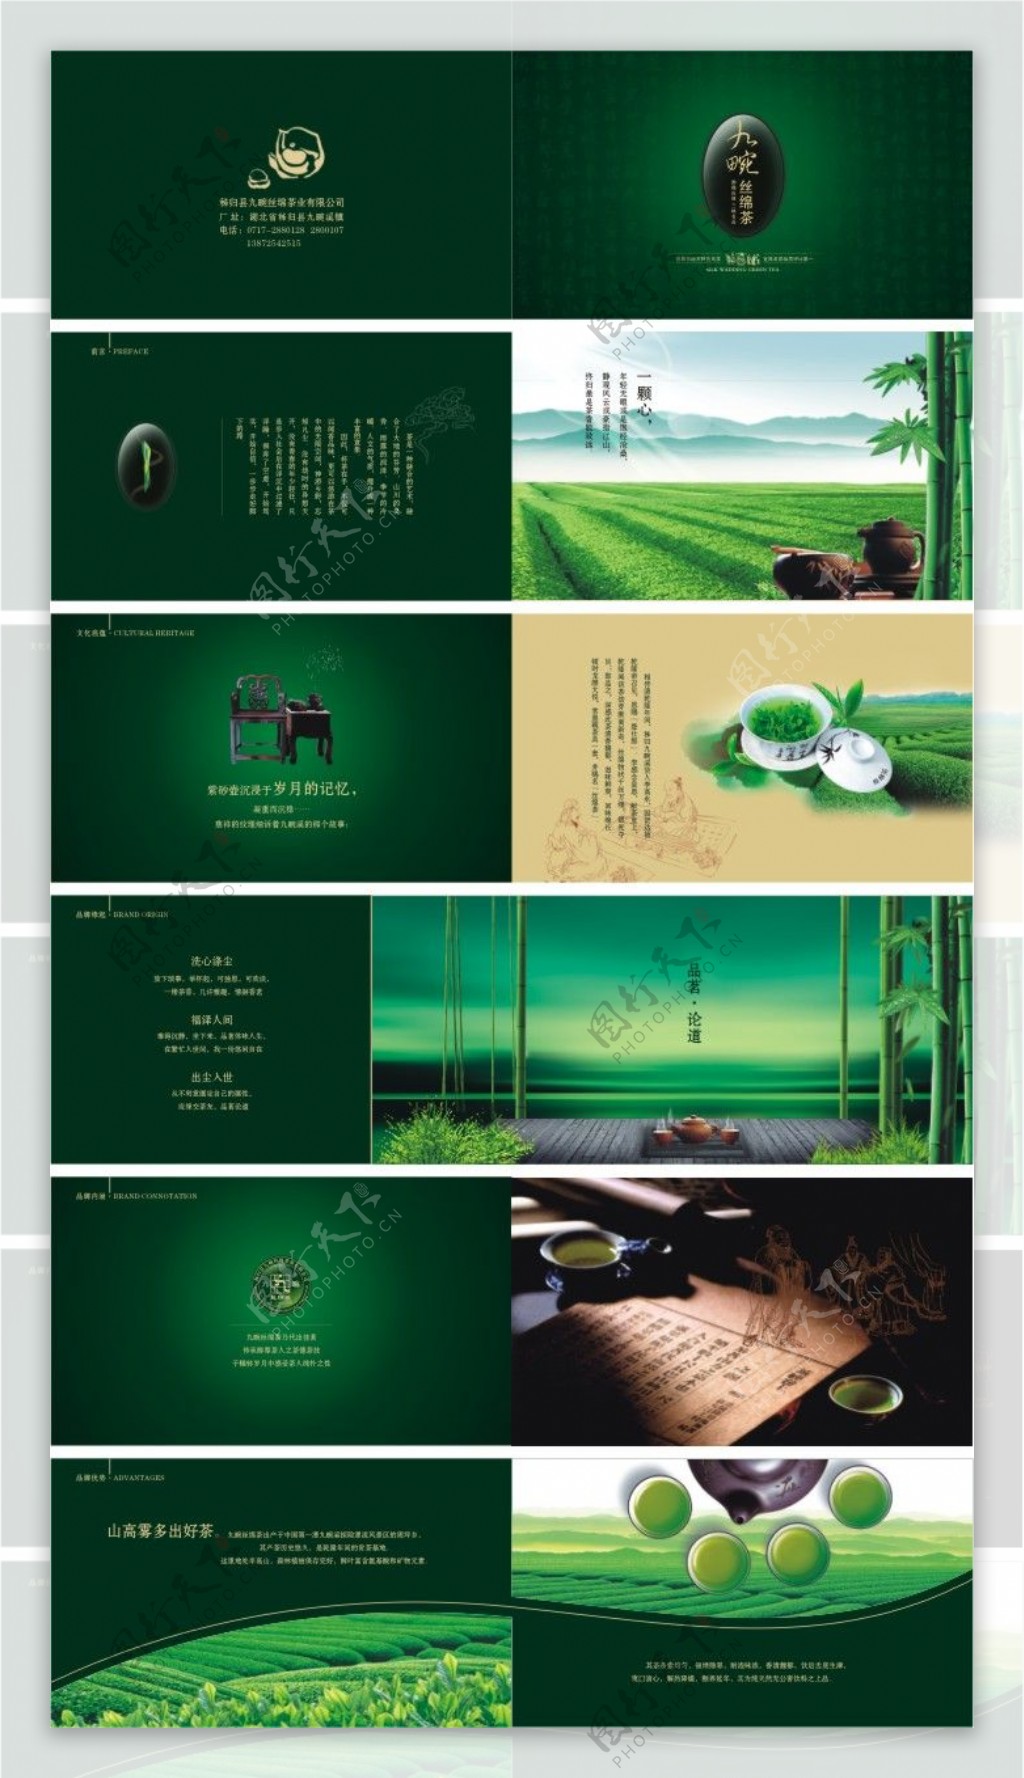 九畹丝绵茶宣传画册矢量素材